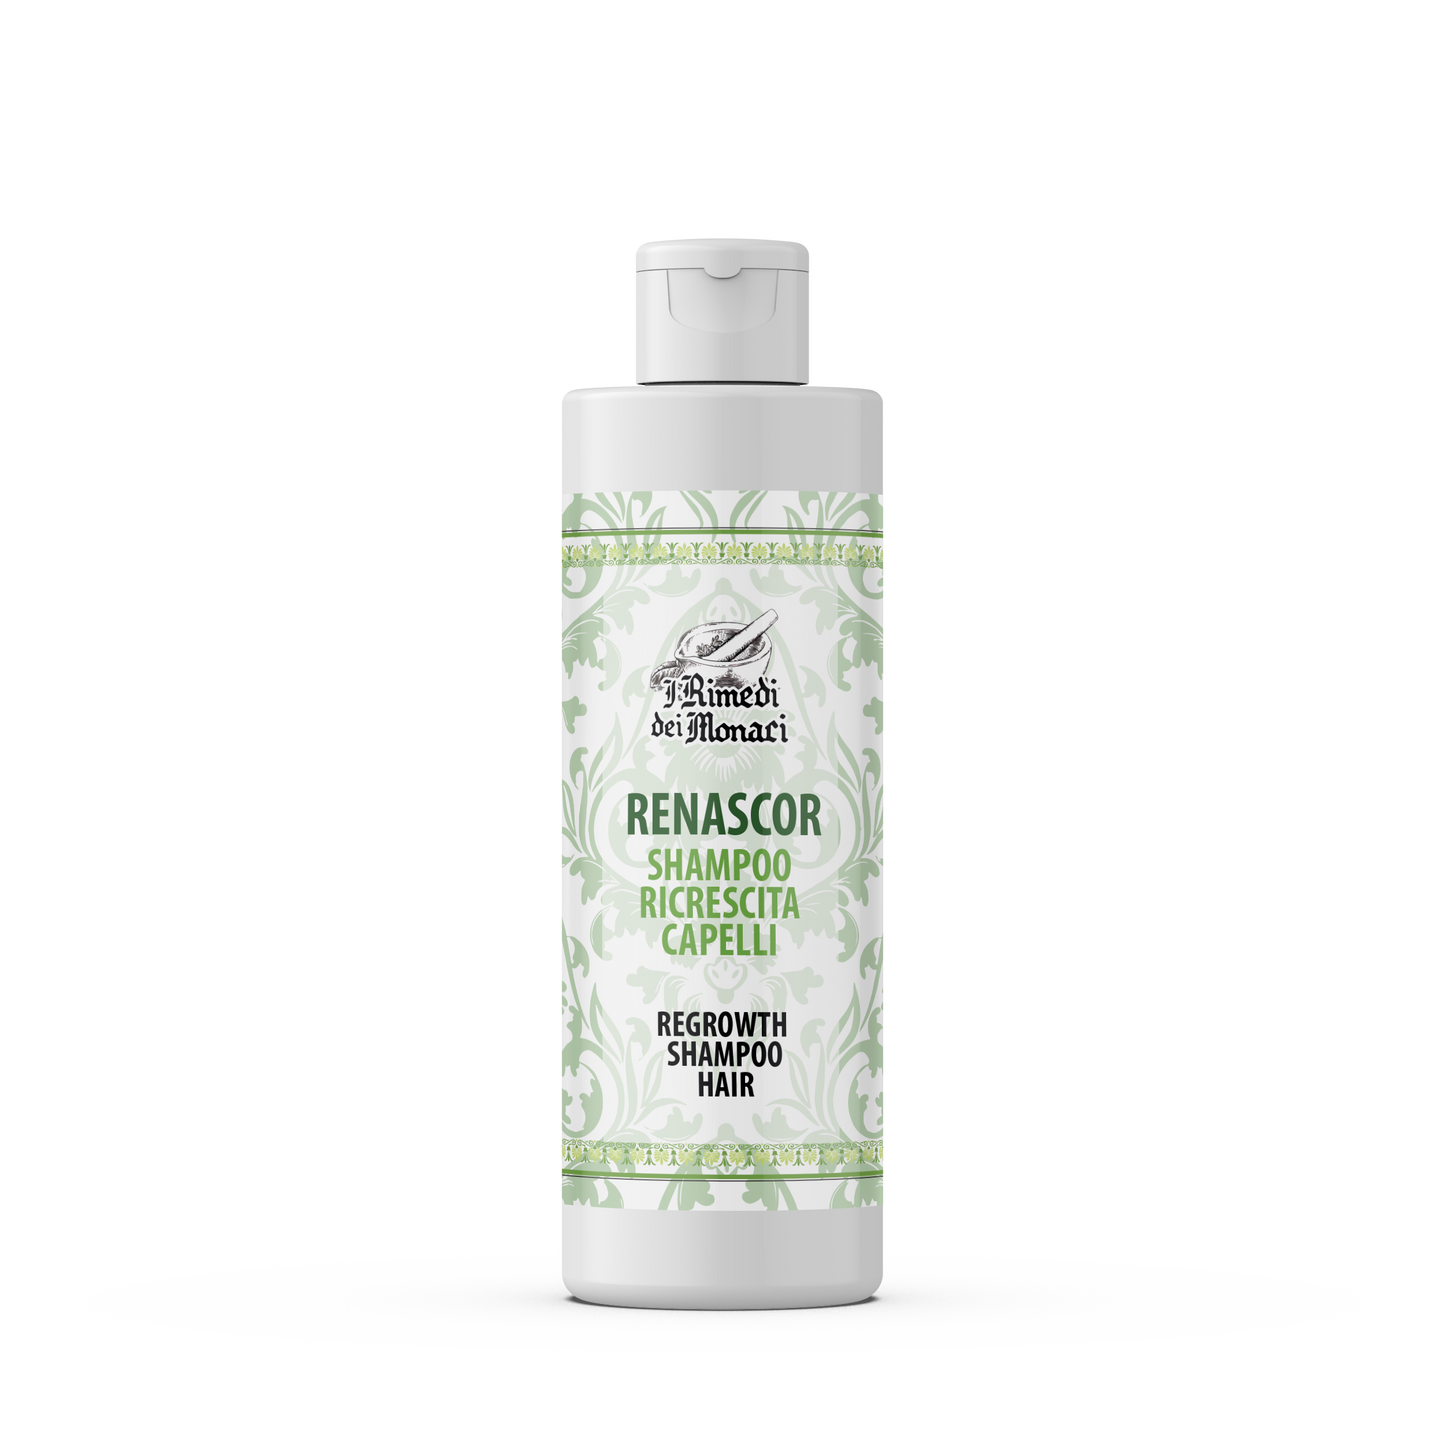 Renascor Shampoo Ricrescita Capelli 250 ml • Anticaduta • Delicato Senza Aggredire Capelli e Cuoio Capelluto